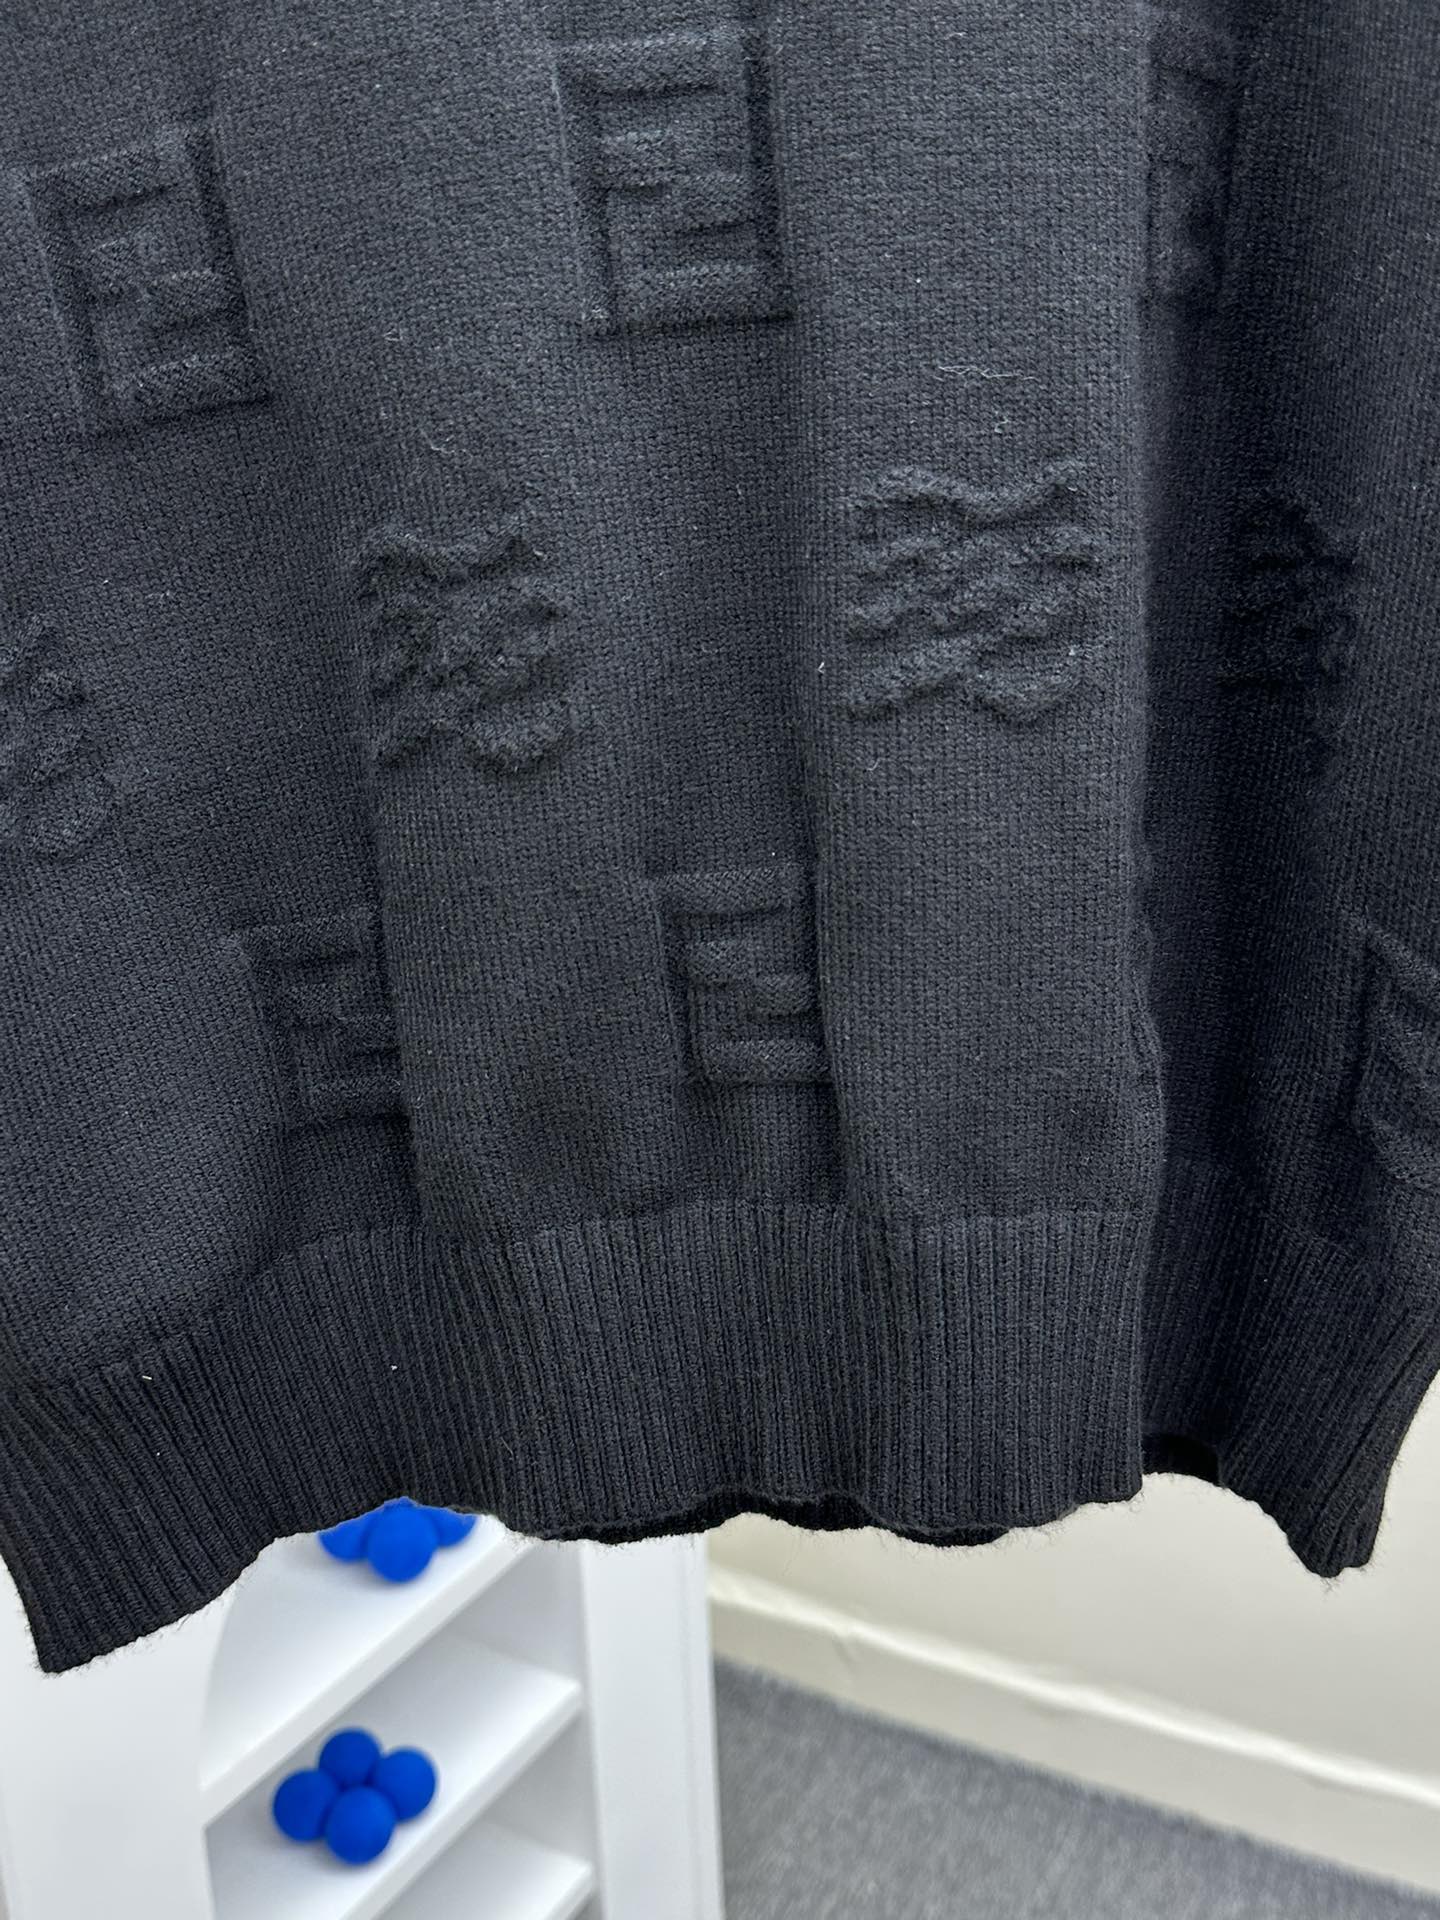 芬迪秋冬新款针织毛衣高端品质专柜版本潮人最爱风格系列撞色拼接设计LOGO图案标志精选优质羊毛混纺针织面料